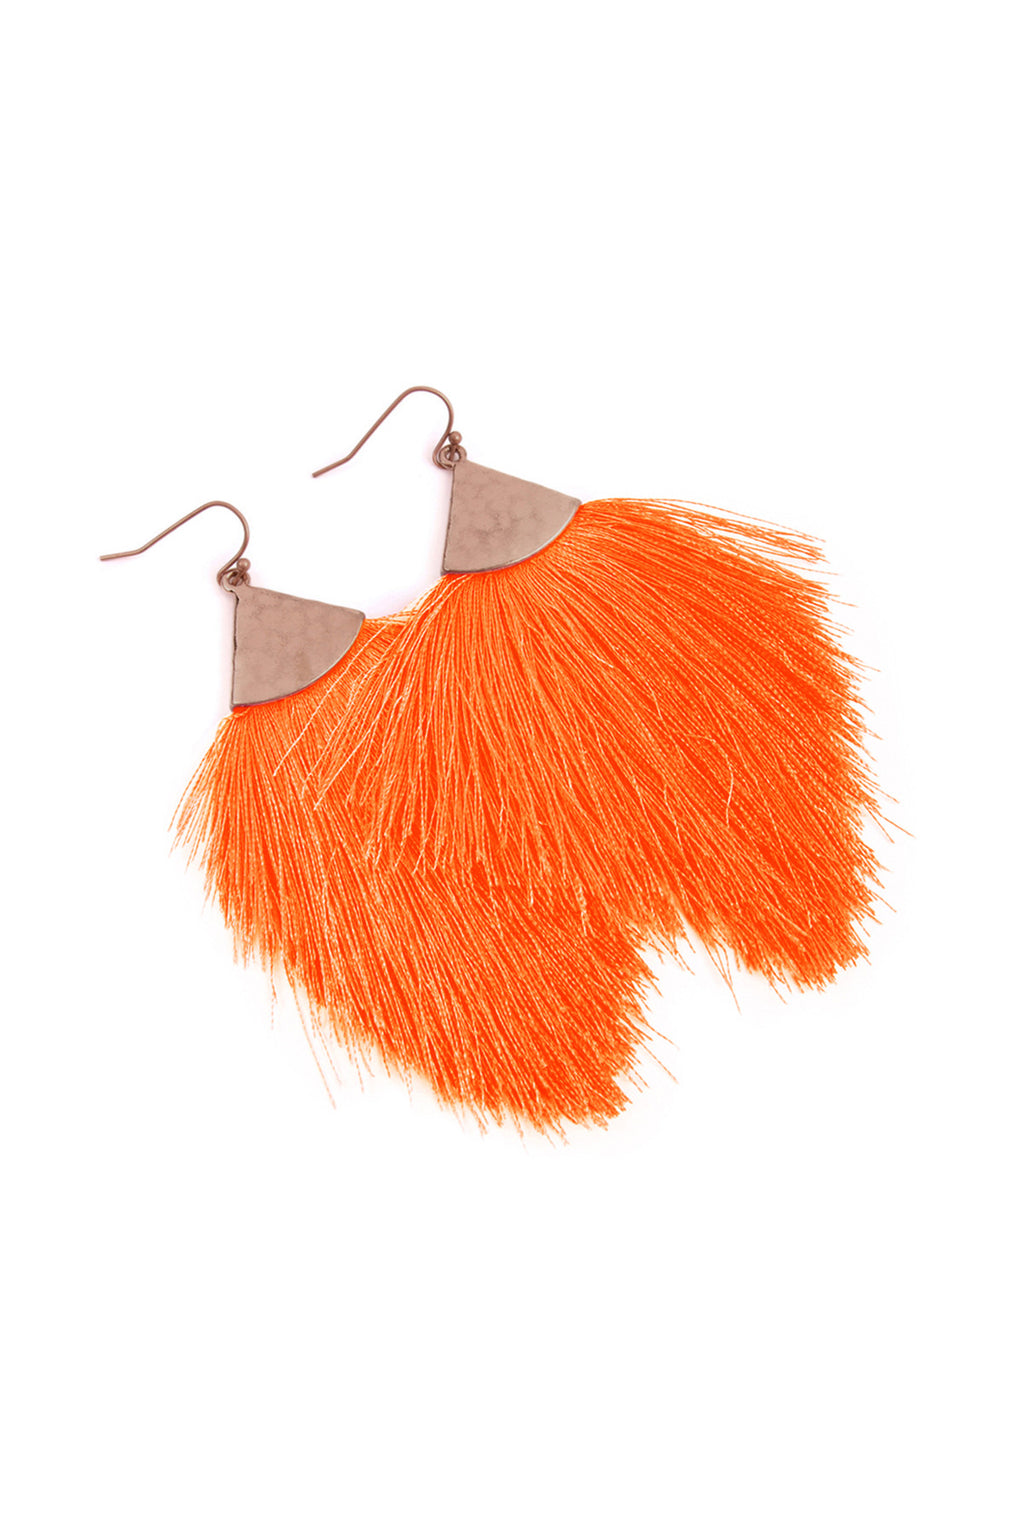 Neon Orange Tassel with Hammered Metal Hook Drop Earrings - Pack of 6